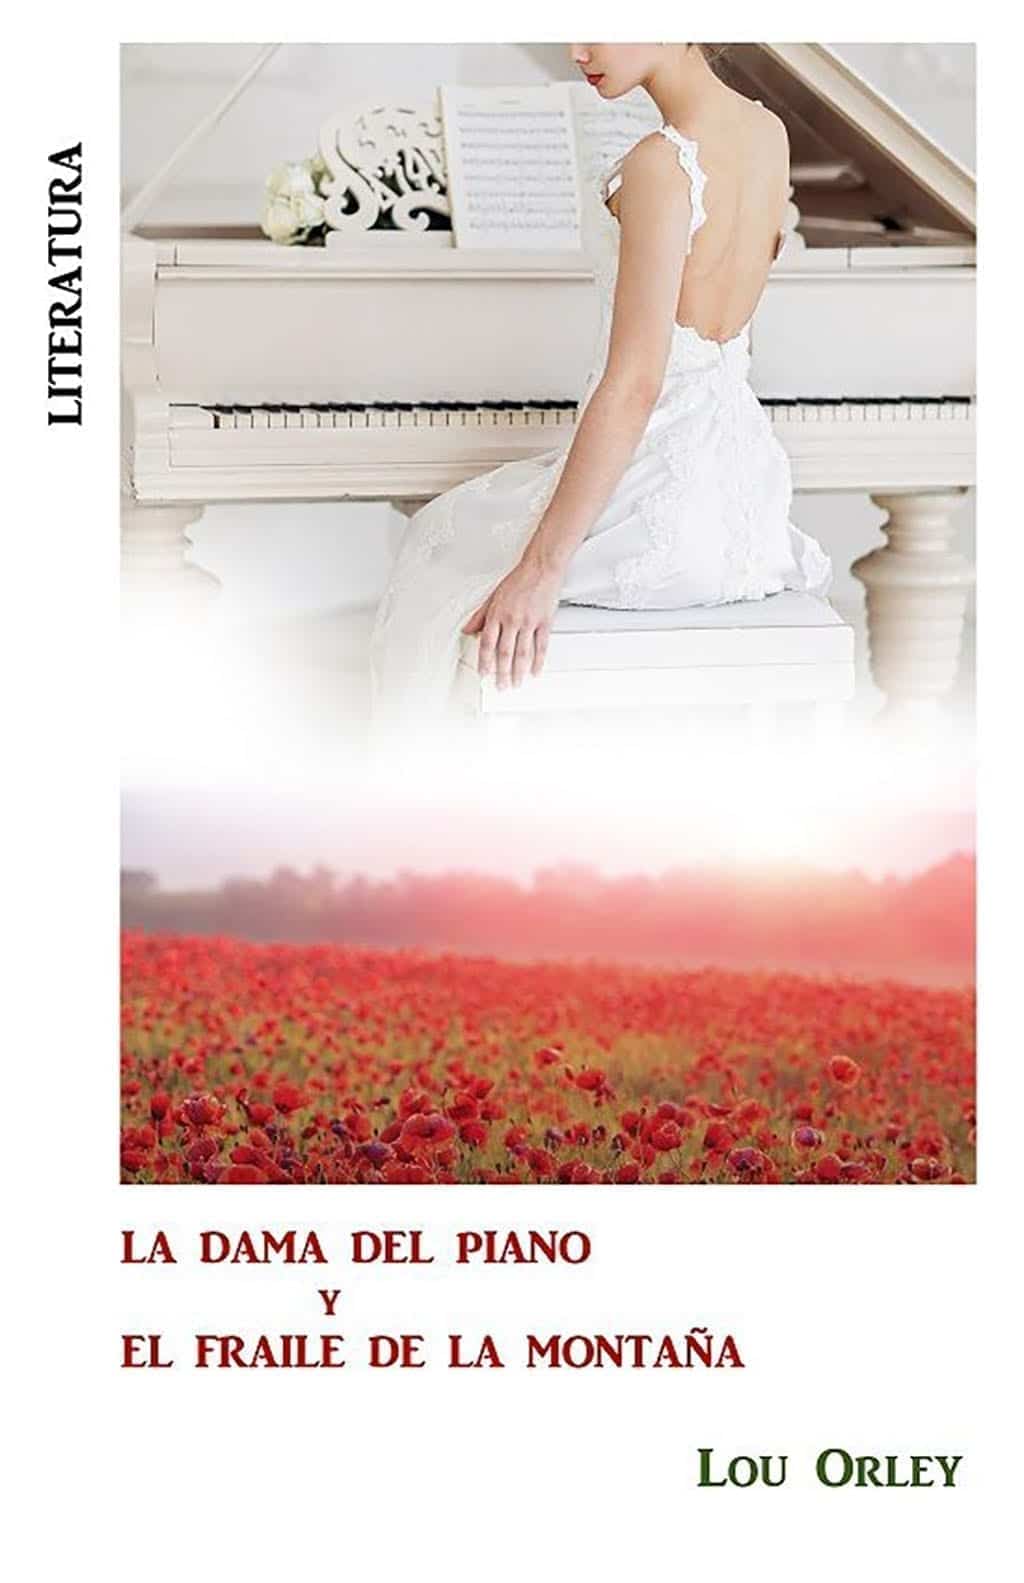 Lou Orley se estrena en la literatura con "La dama del piano y el fraile de la montaña"